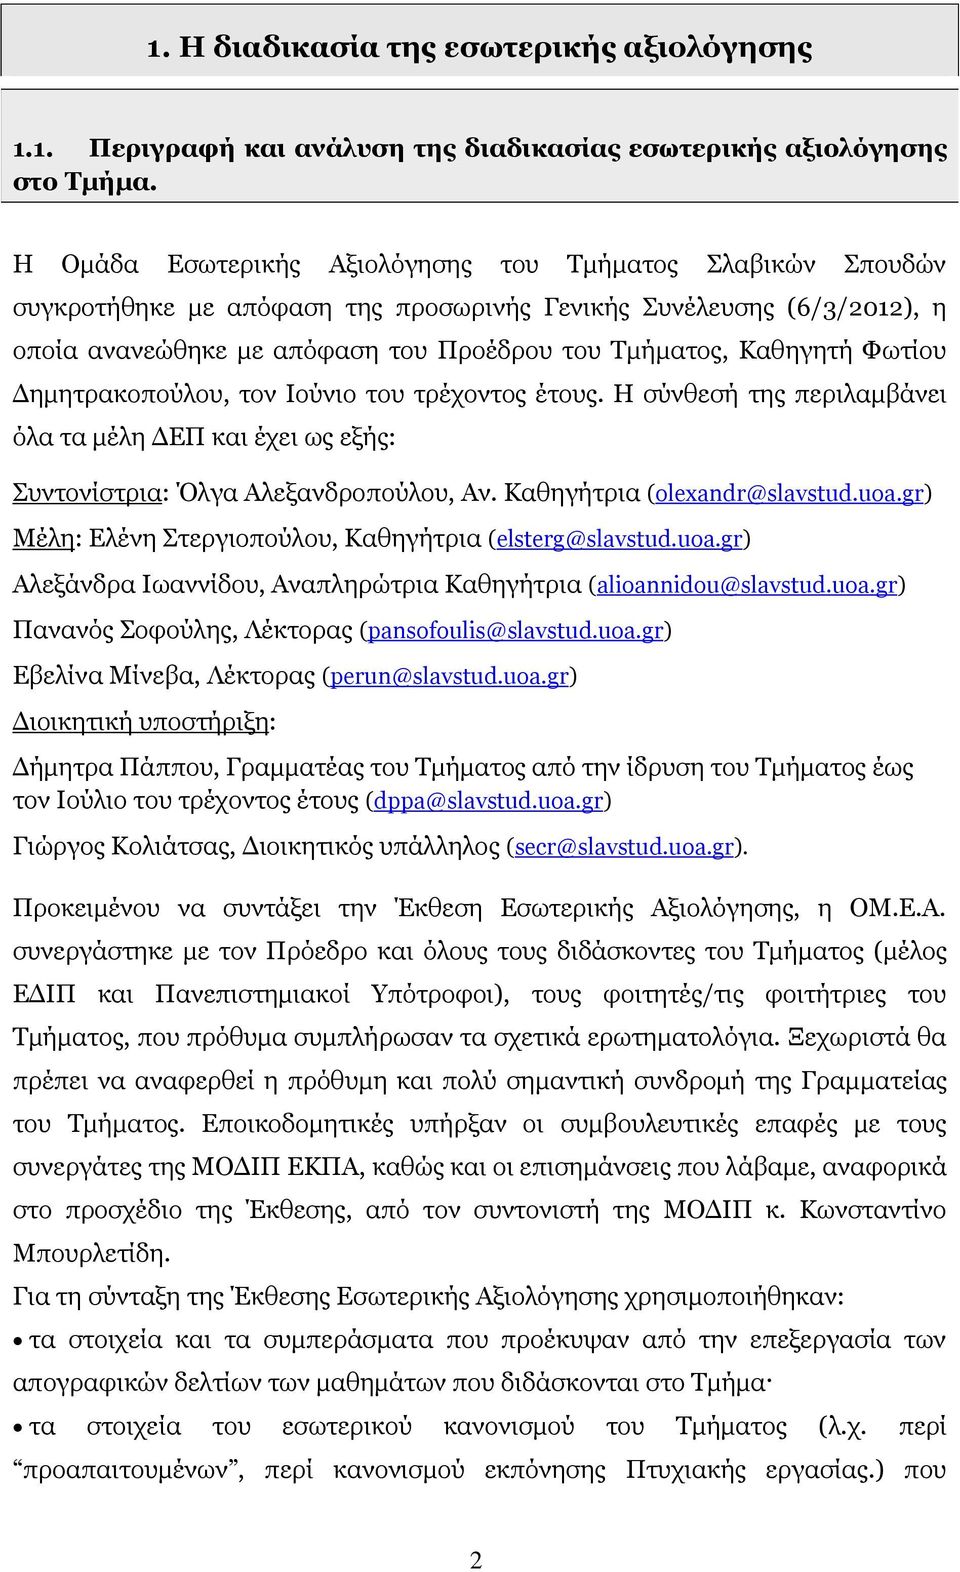 Φωτίου Δημητρακοπούλου, τον Ιούνιο του τρέχοντος έτους. Η σύνθεσή της περιλαμβάνει όλα τα μέλη ΔΕΠ και έχει ως εξής: Συντονίστρια: Όλγα Αλεξανδροπούλου, Αν. Καθηγήτρια (olexandr@slavstud.uoa.